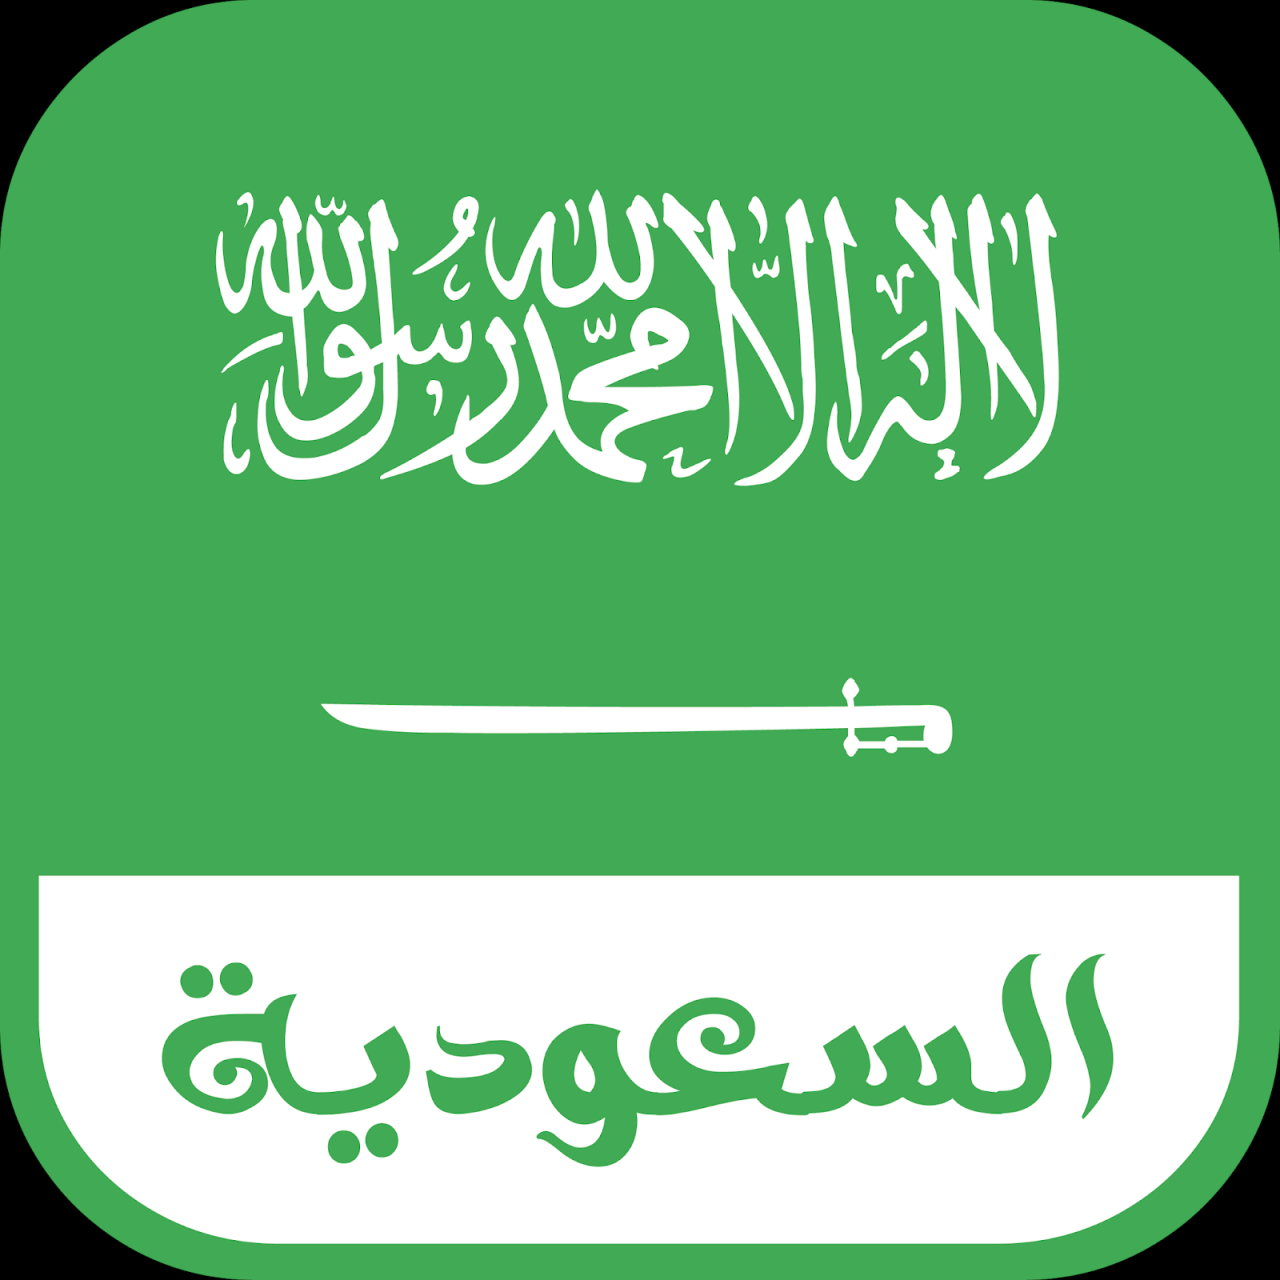 صور علم السعوديه , افضل جودة مميزة لعلم السعودية بالصور - هل تعلم ؟